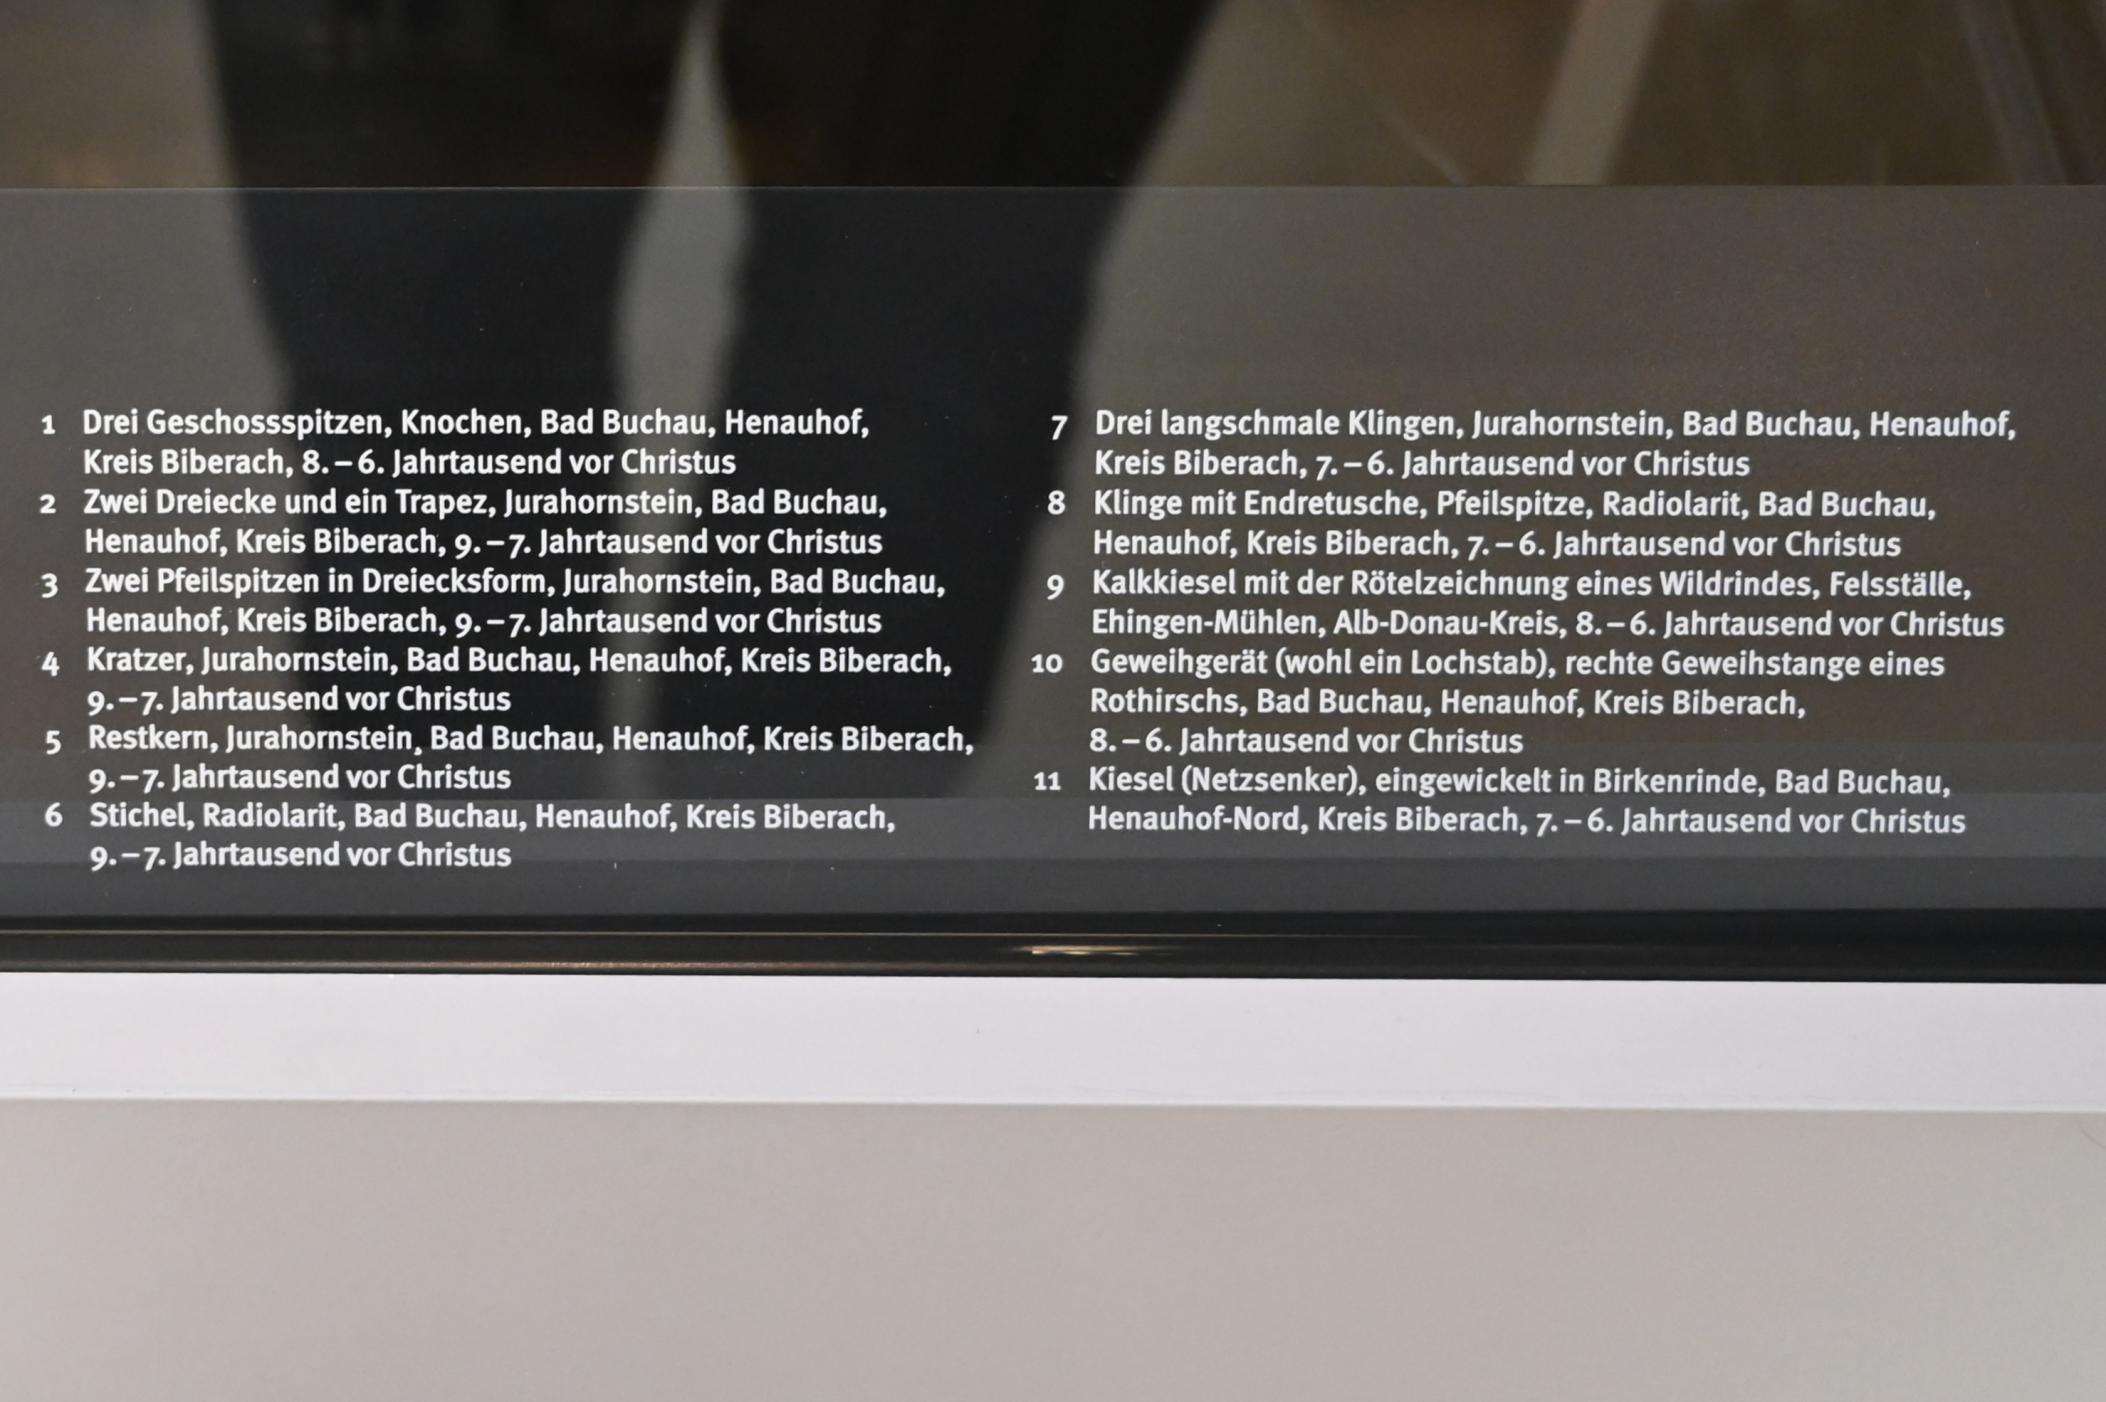 Kalkkiesel mit der Rötelzeichnung eines Wildrindes, Mesolithikum, 9500 - 5500 v. Chr., 8000 - 5500 v. Chr., Bild 3/4